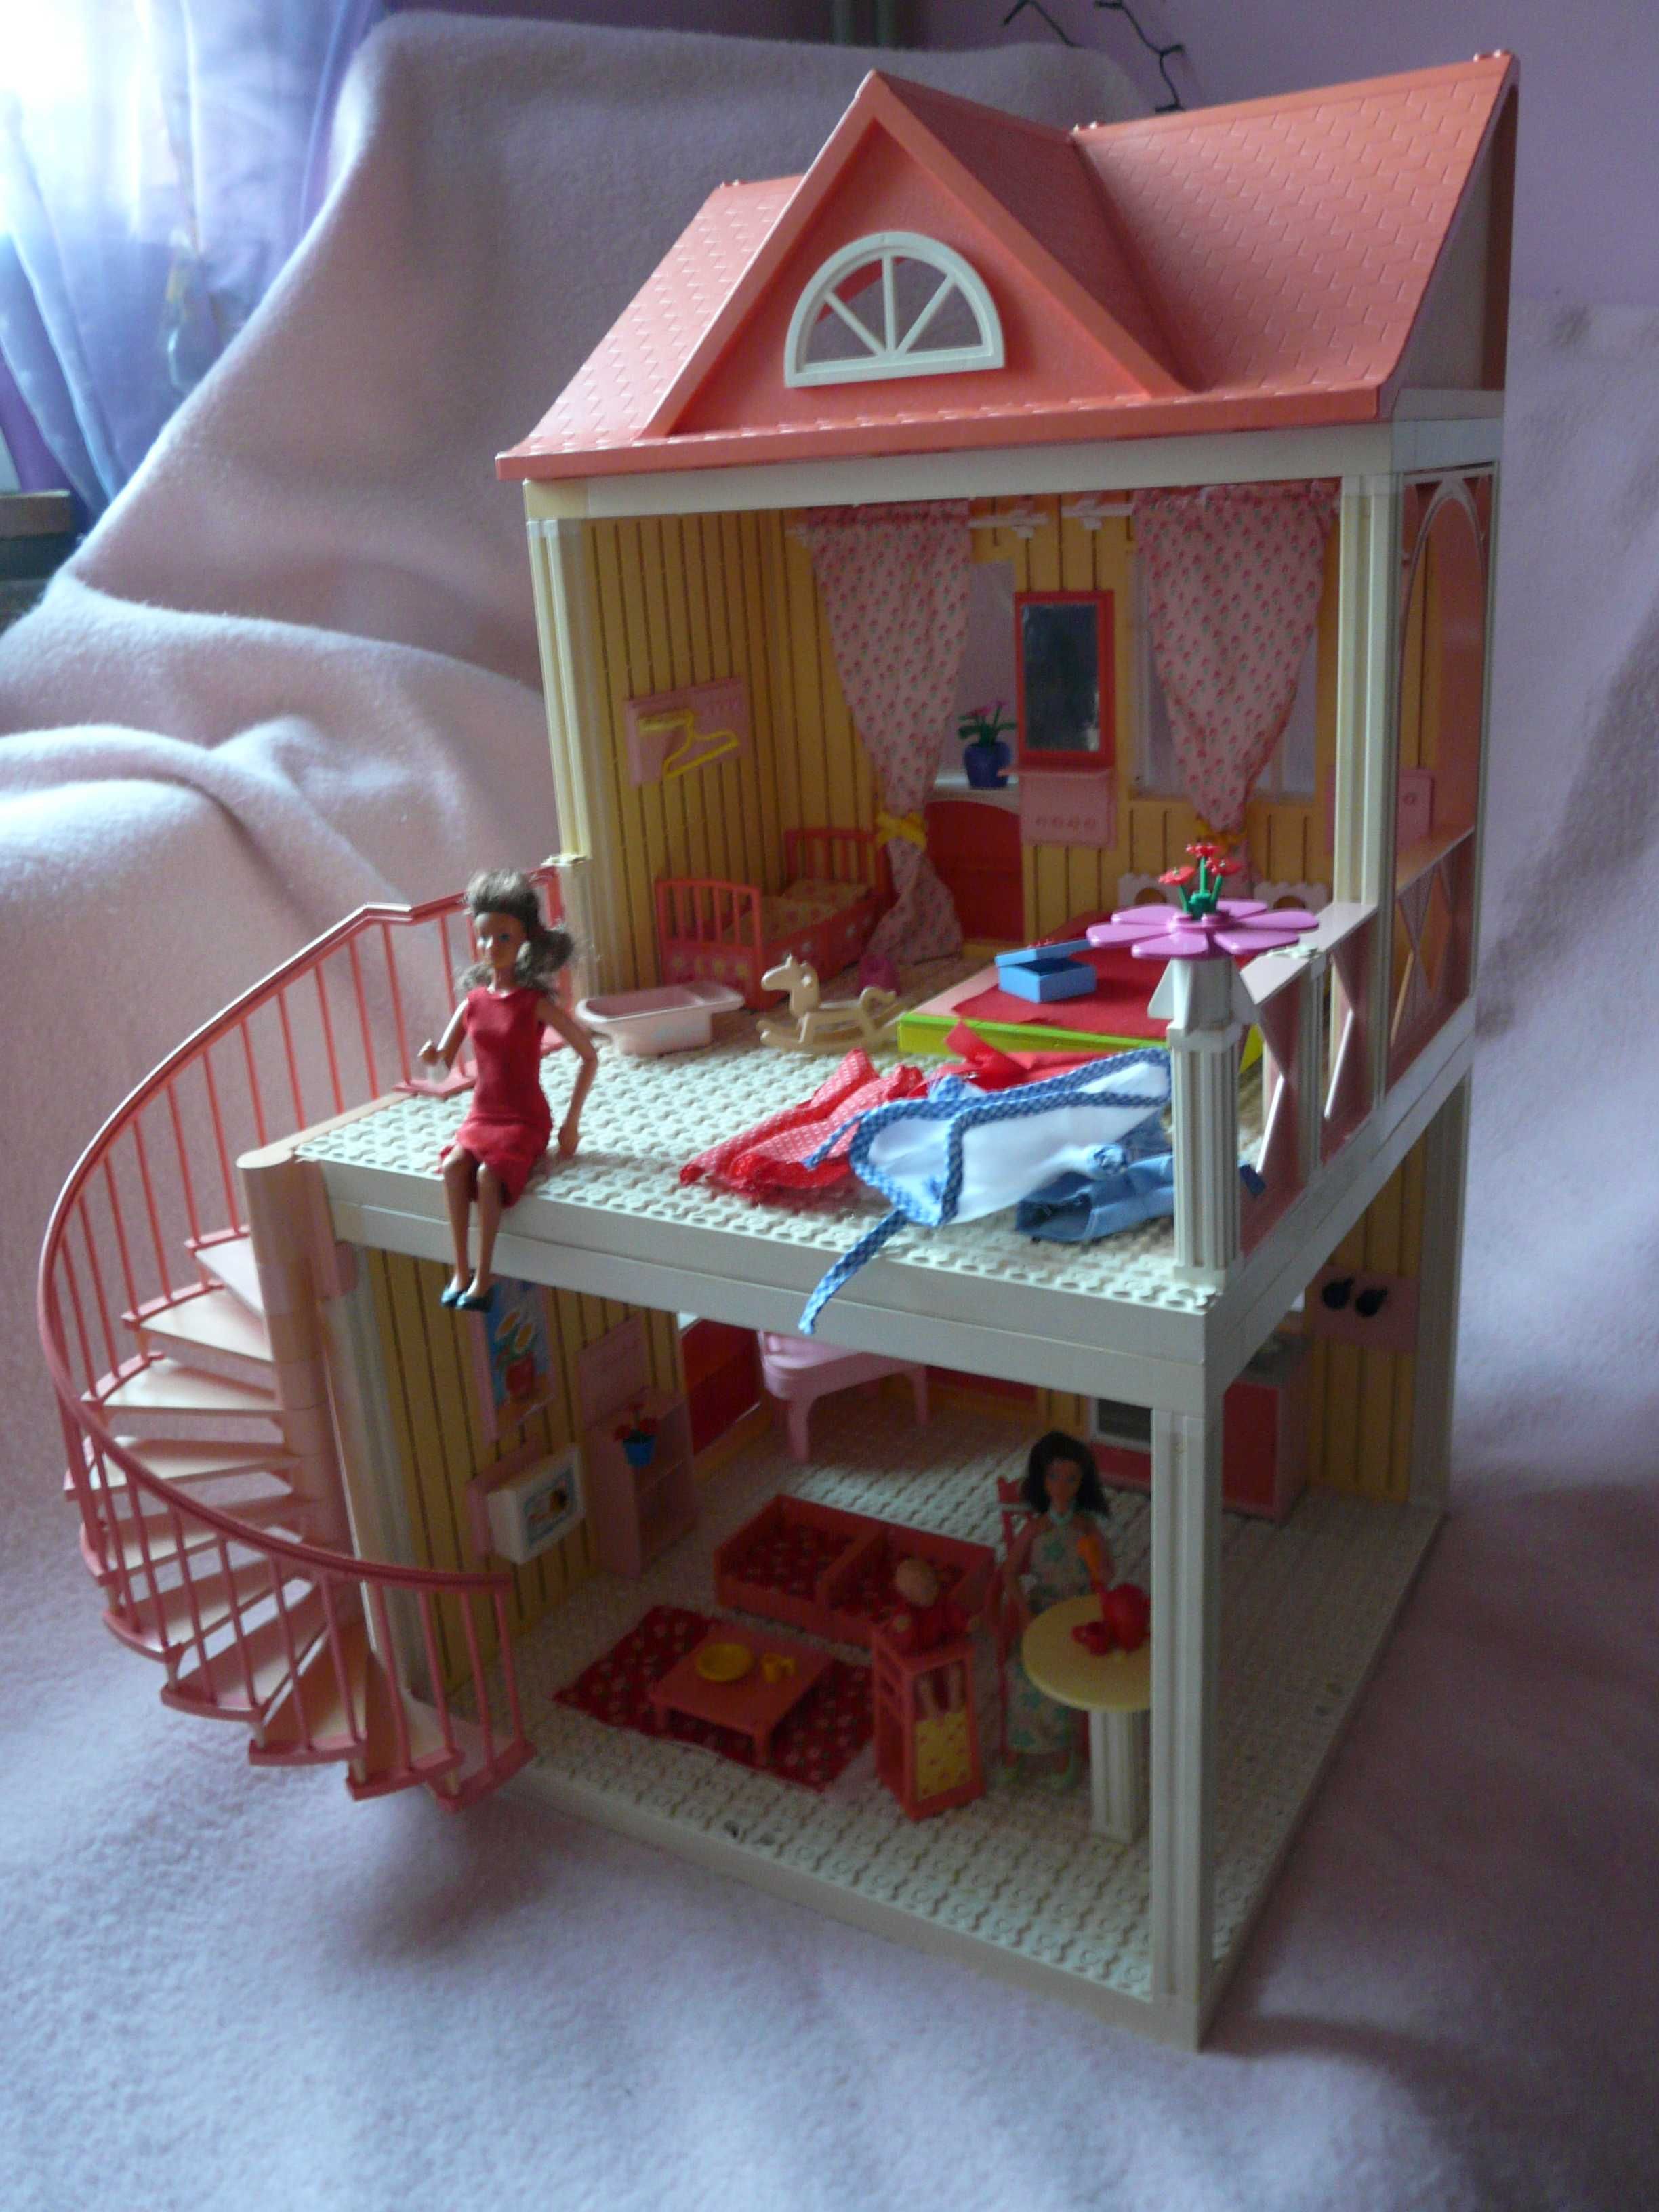 LEGO scala belville friends piętrowy domek dla lalek wys. 60 cm